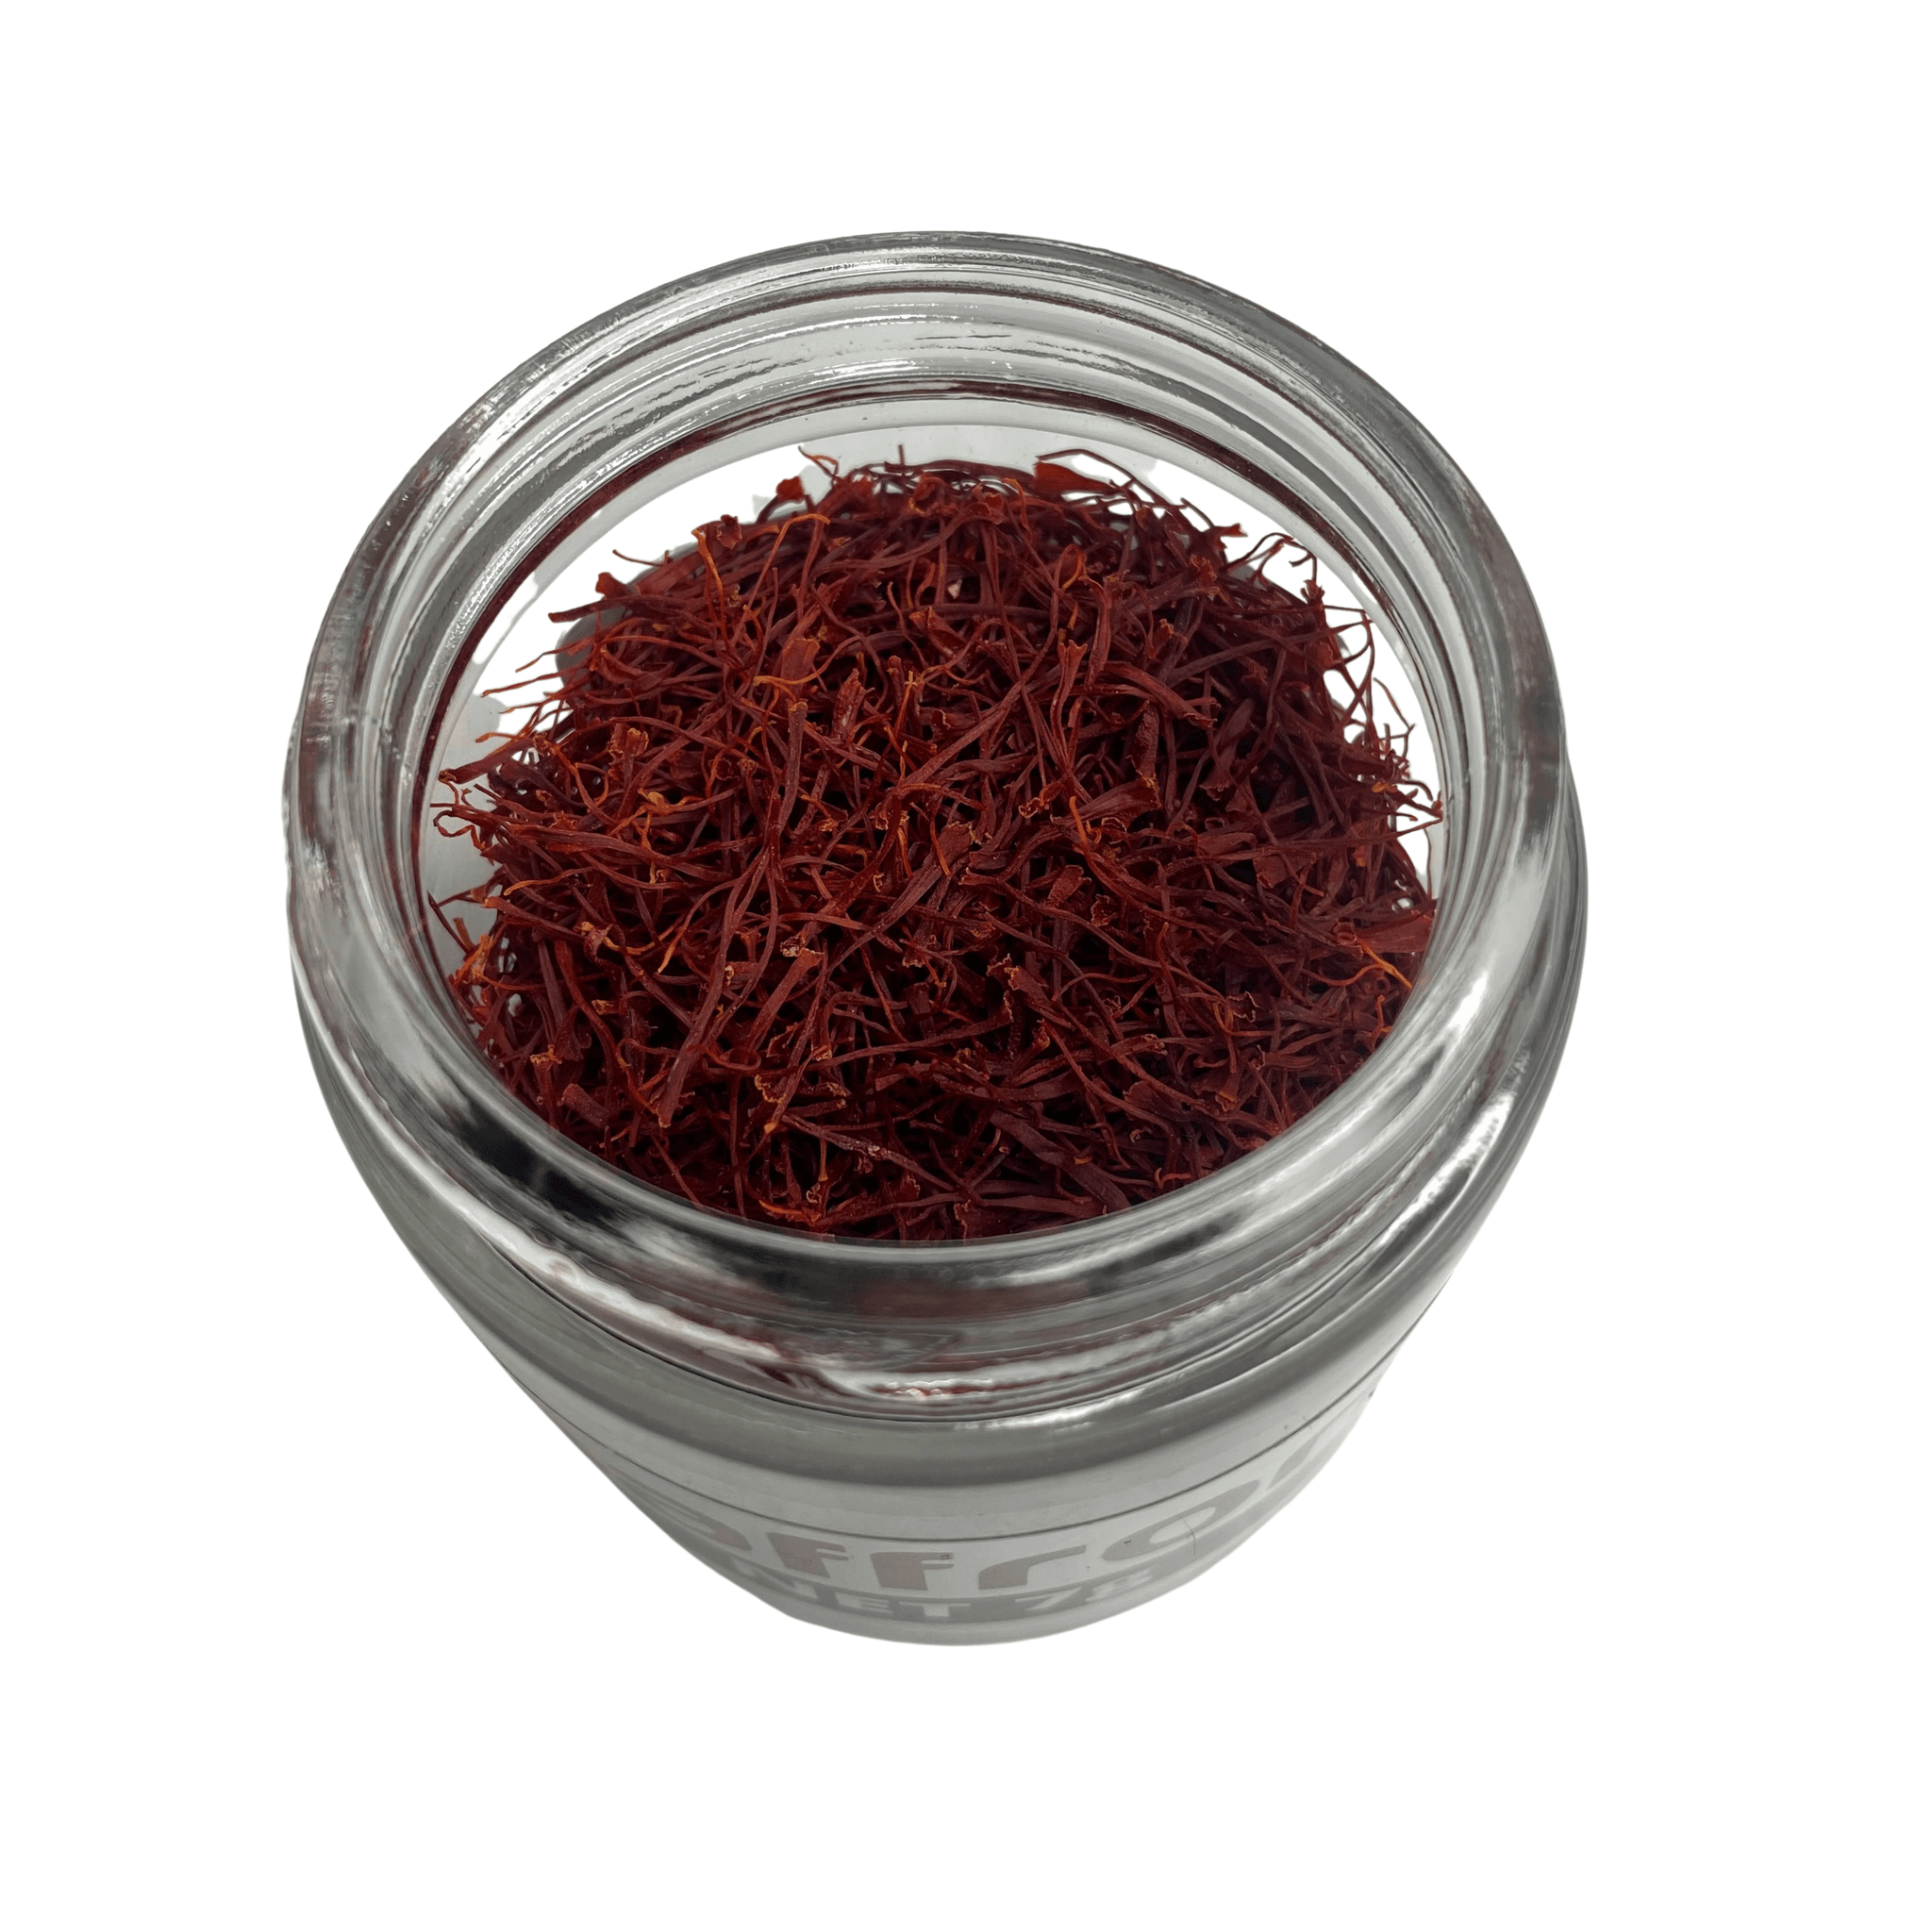 7 Grams Saffron - Afghan Saffron Co. saffron spice from Afghanistan h